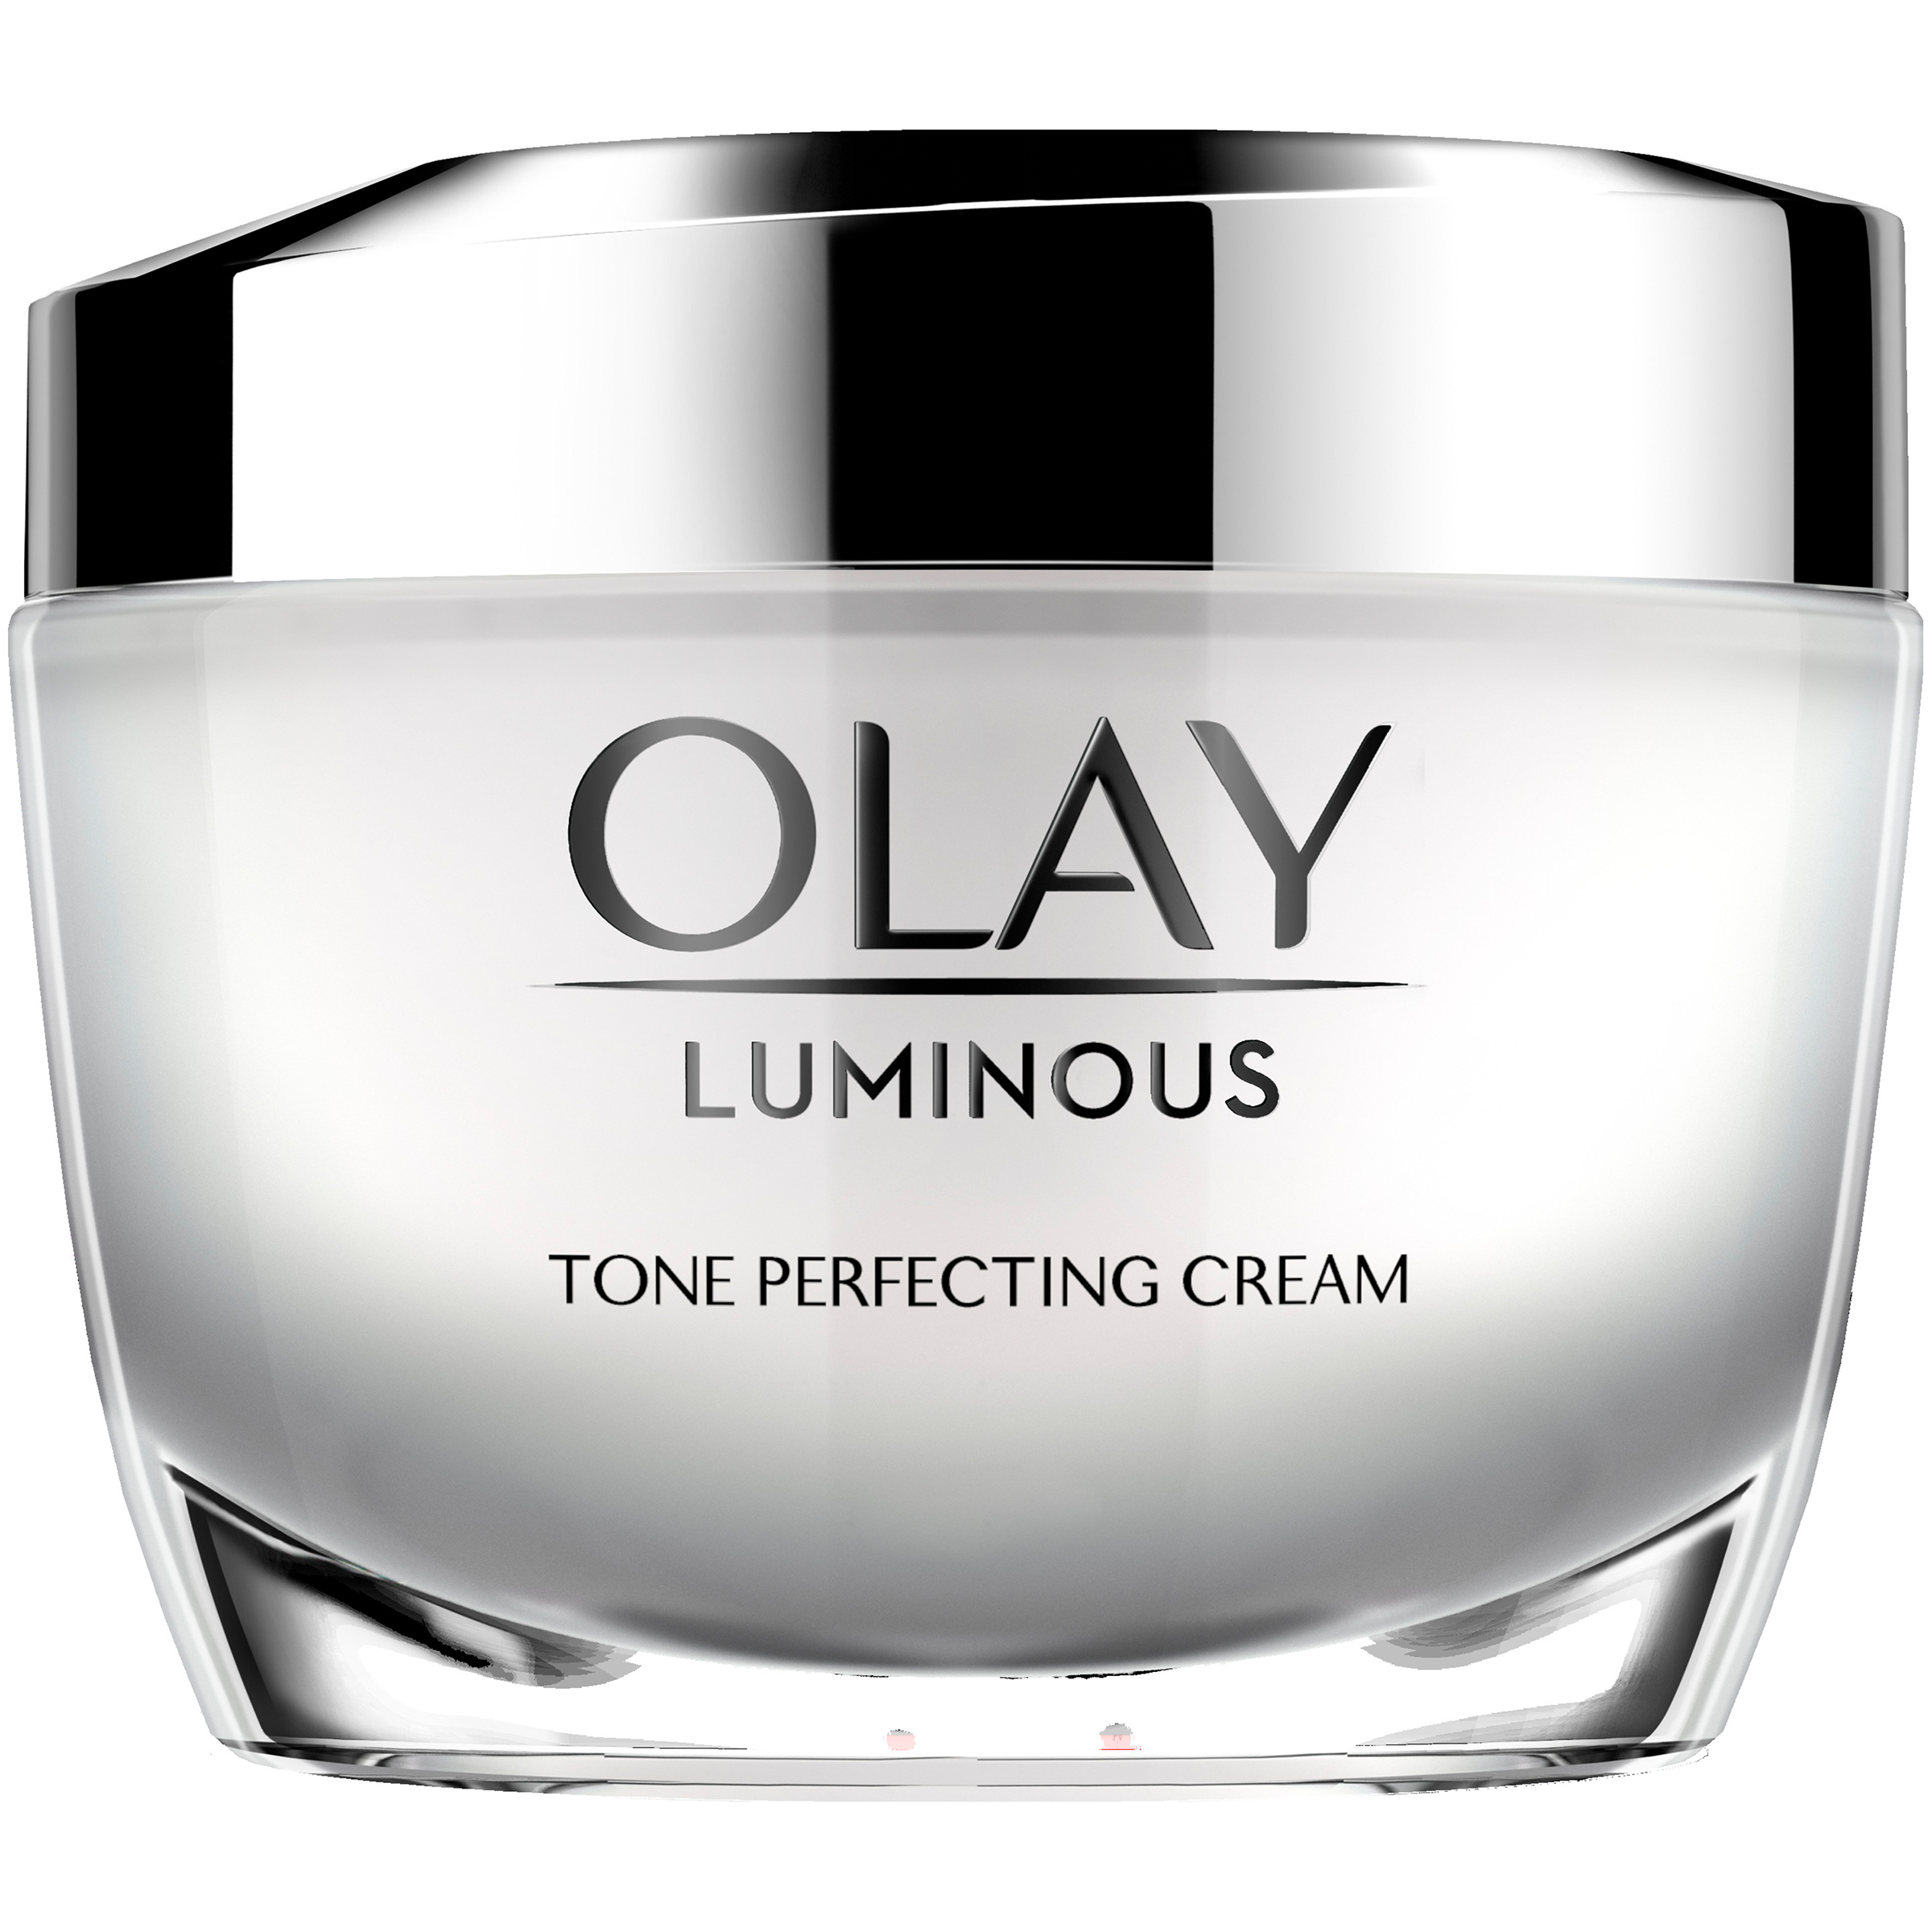 Olay Regenerist Luminous Tone Perfecting Cream 1.7 fl oz